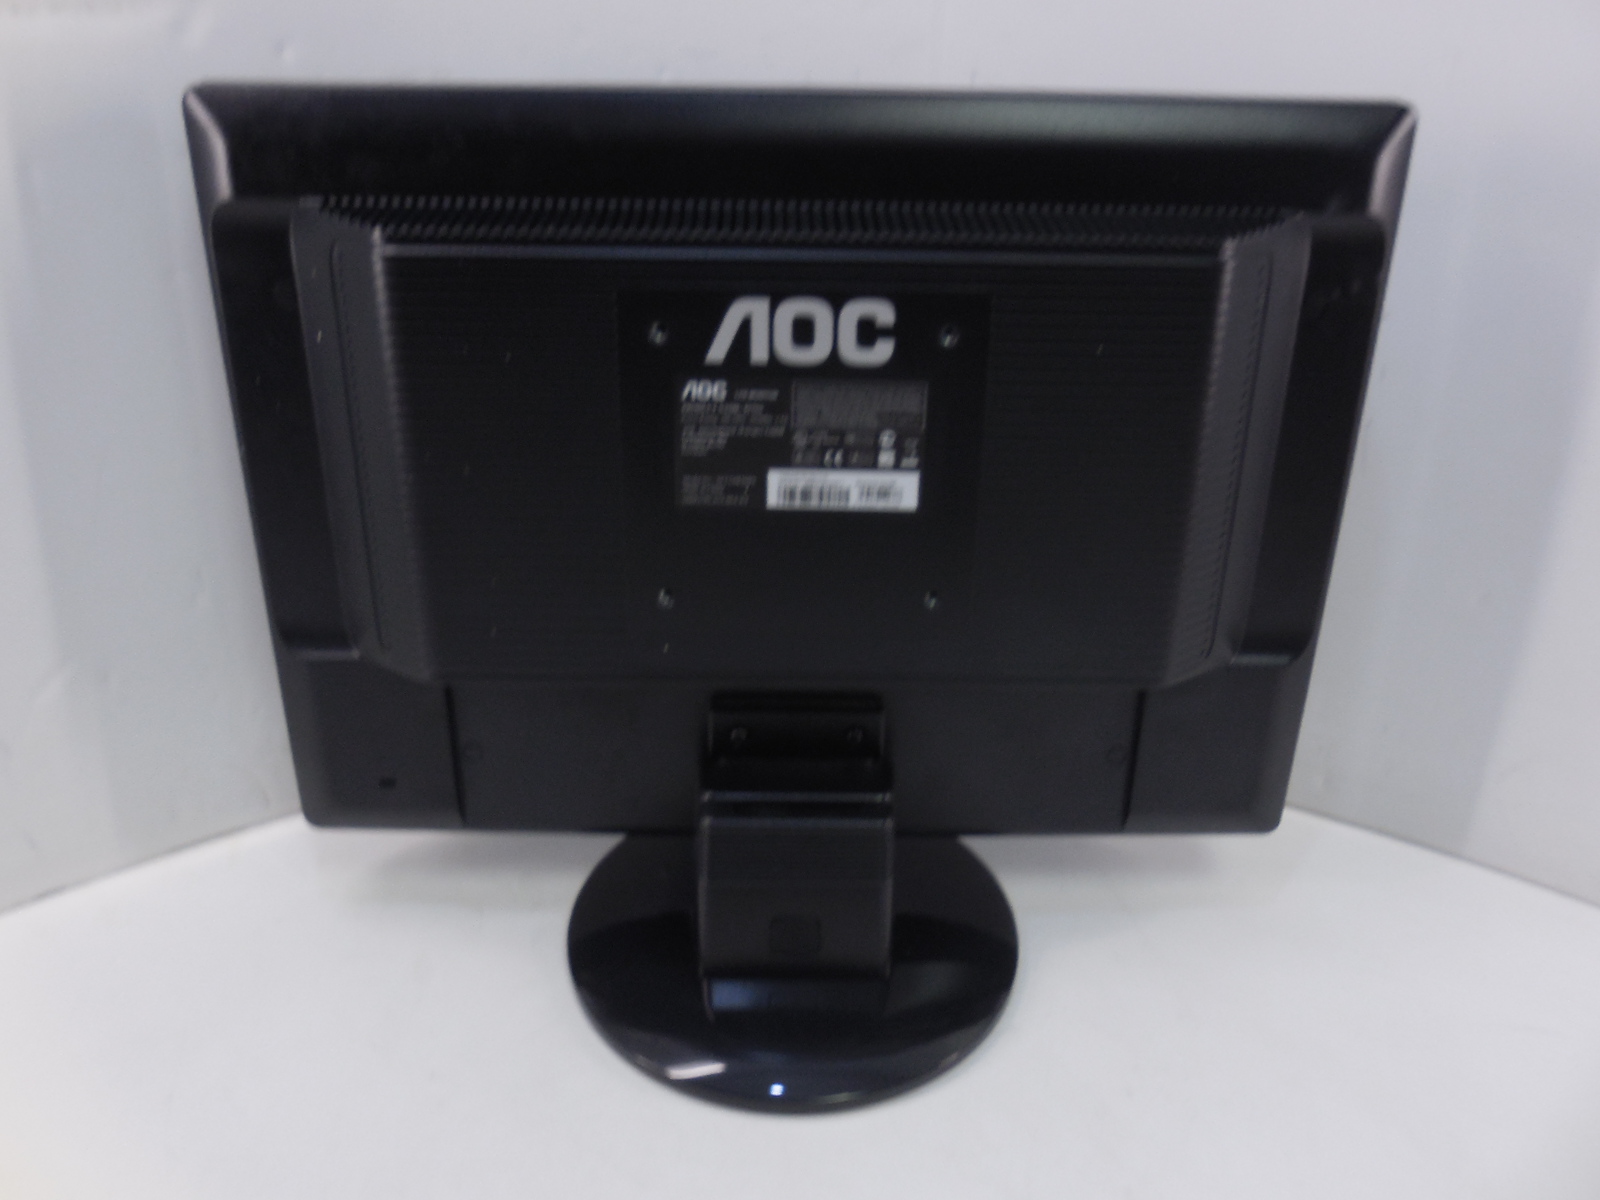 Жк монитор 19. Монитор AOC 917sw+. "Монитор 19"" LCD Samsung e1920nw wide VGA Black". Монитор AOC 992sw2. Монитор АОС 19 дюймов.